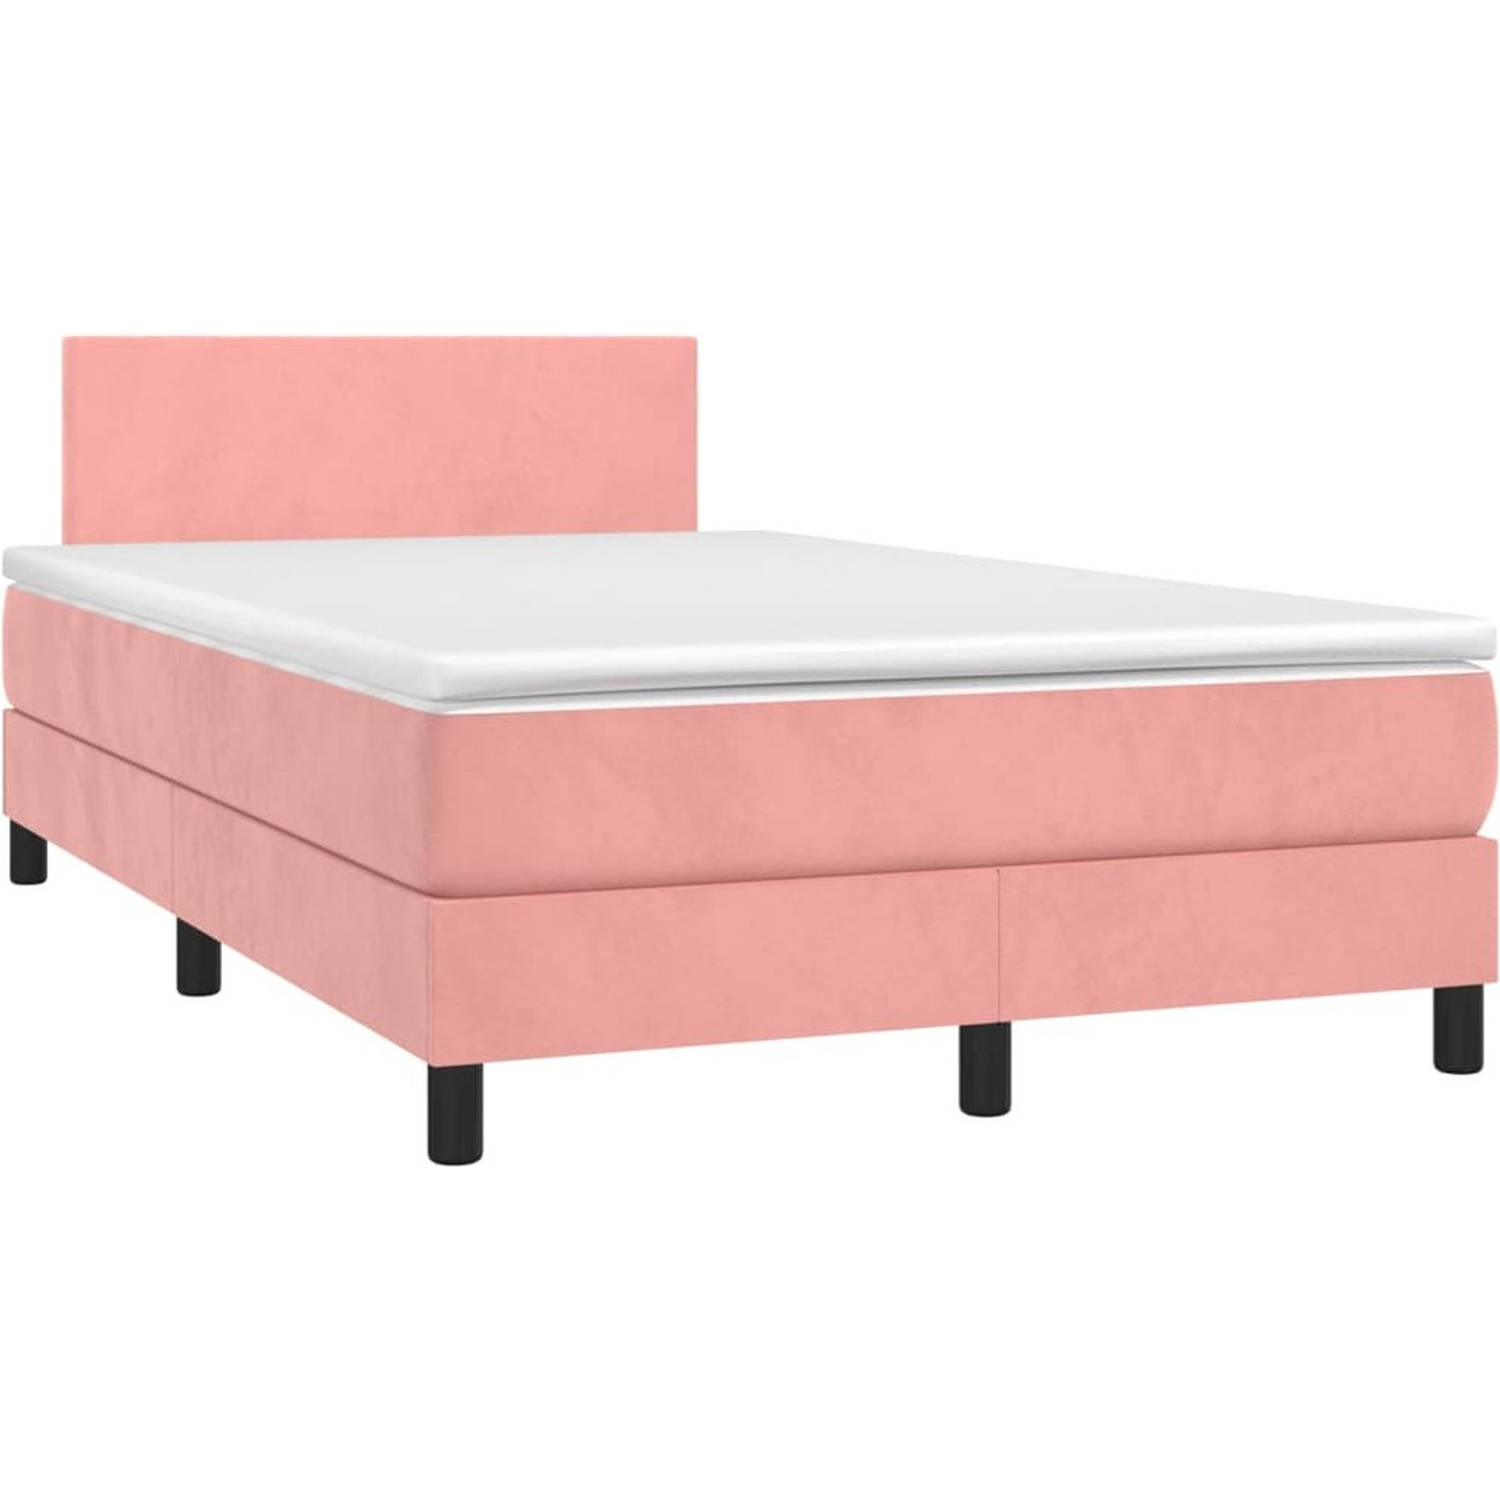 The Living Store Bed - Roze Fluweel - 203 x 120 x 78/88 cm - Verstelbaar hoofdbord - Kleurrijke LED-verlichting - Pocketvering matras - Huidvriendelijk topmatras - Inclusief LED-st